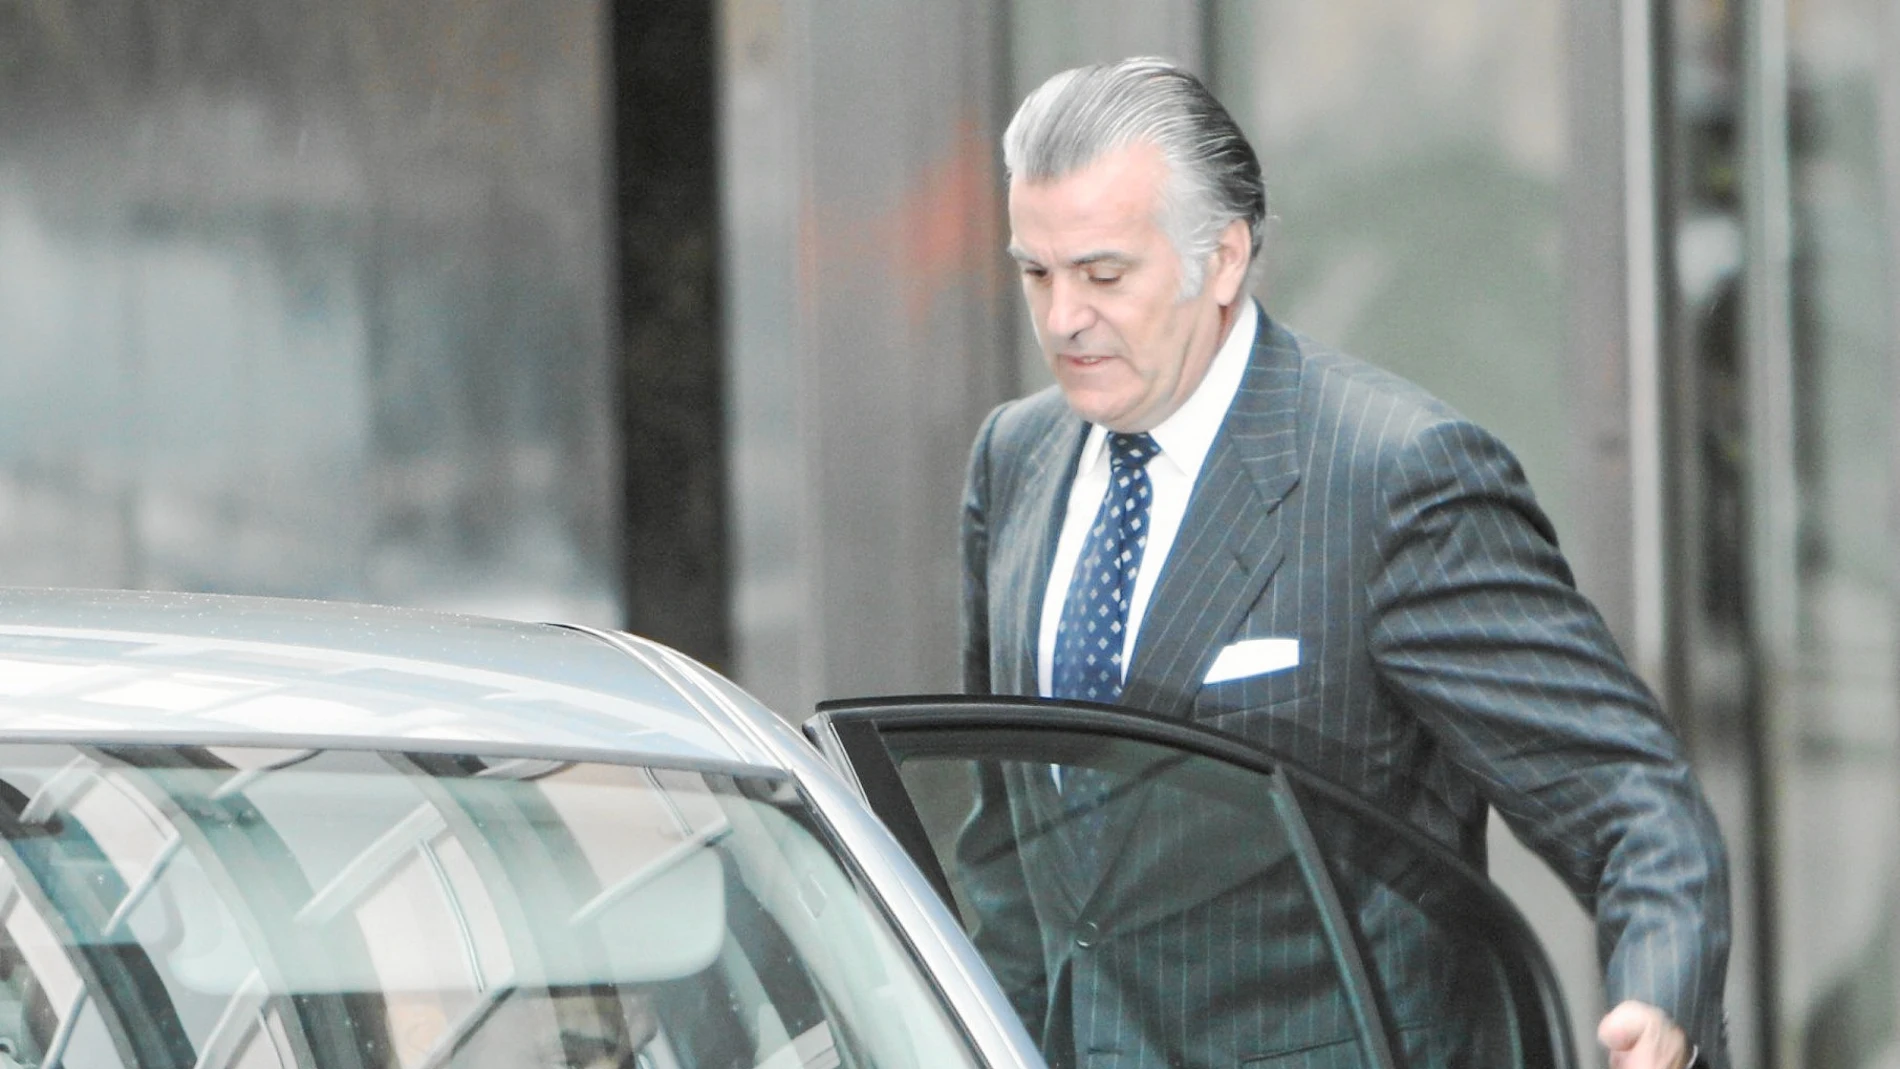 El ex tesorero del PP Luis Bárcenas declarará ante el juez De la Mata el próximo día 21